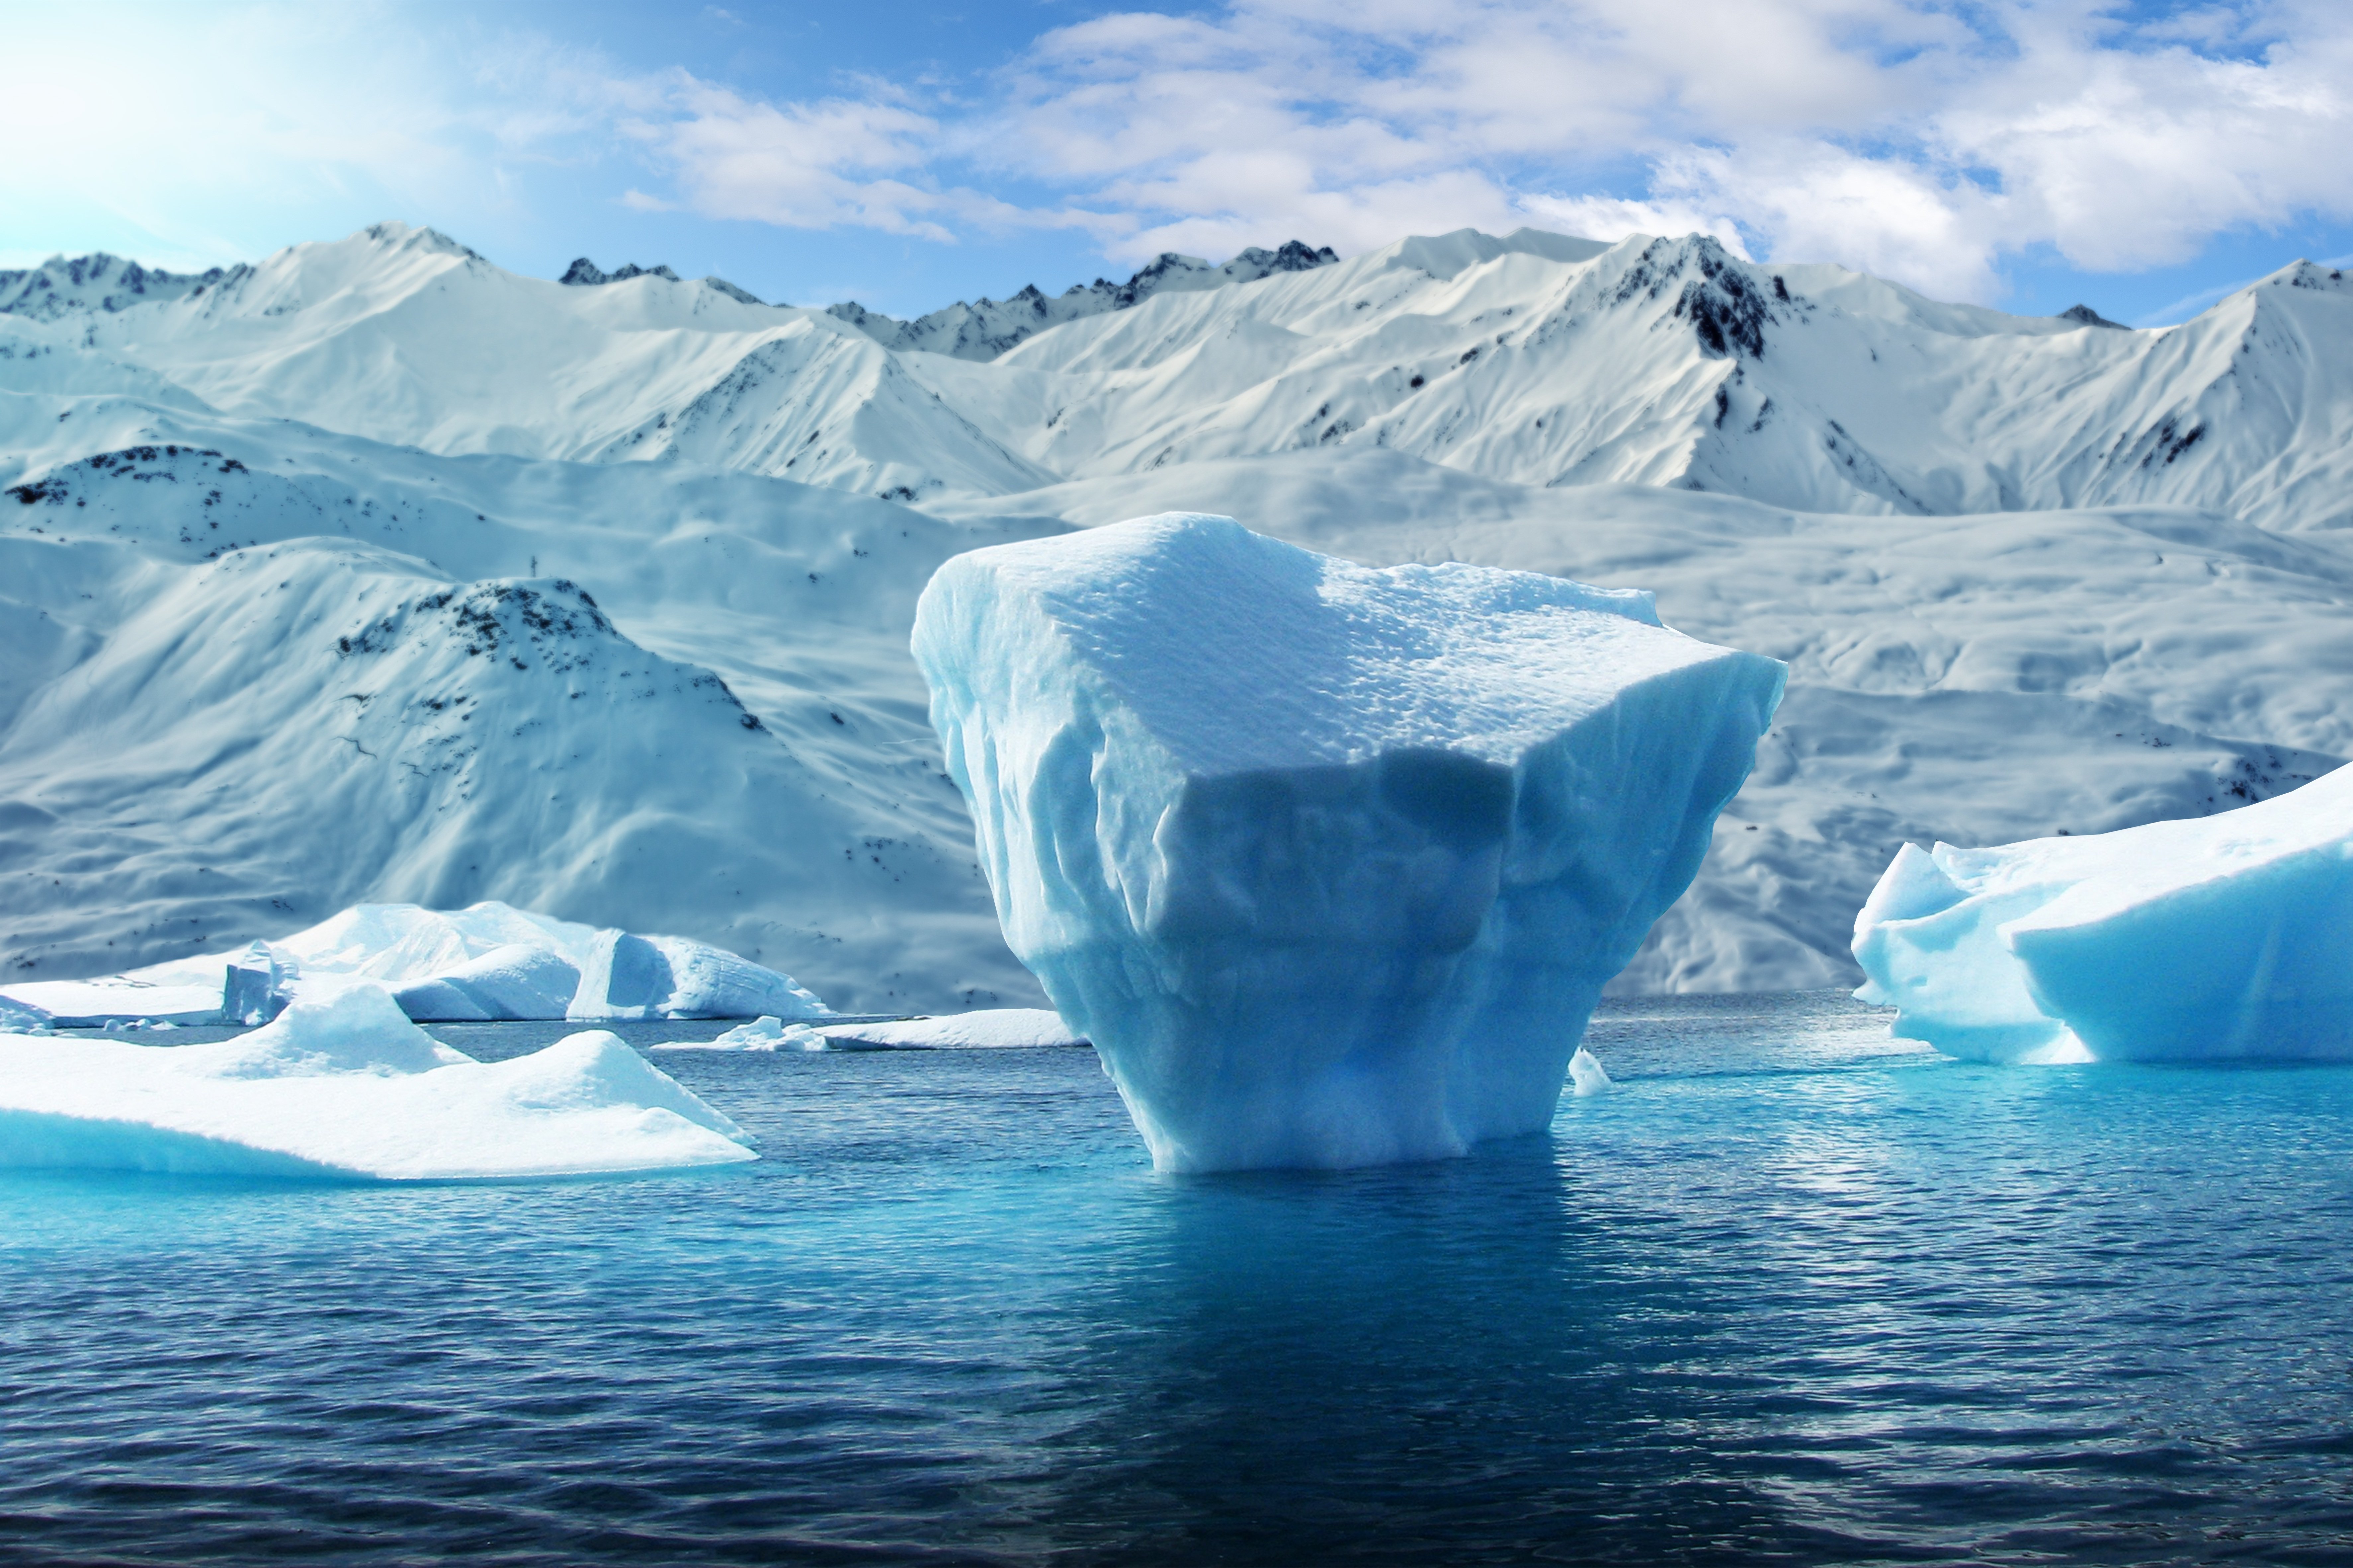 Бассейн антарктического океана реки. Гренландия ледник эймери. Антарктида Гренландия Арктика Северный Ледовитый океан. Полярный (Арктический и антарктический) климат. Лед Айсберг Арктика.